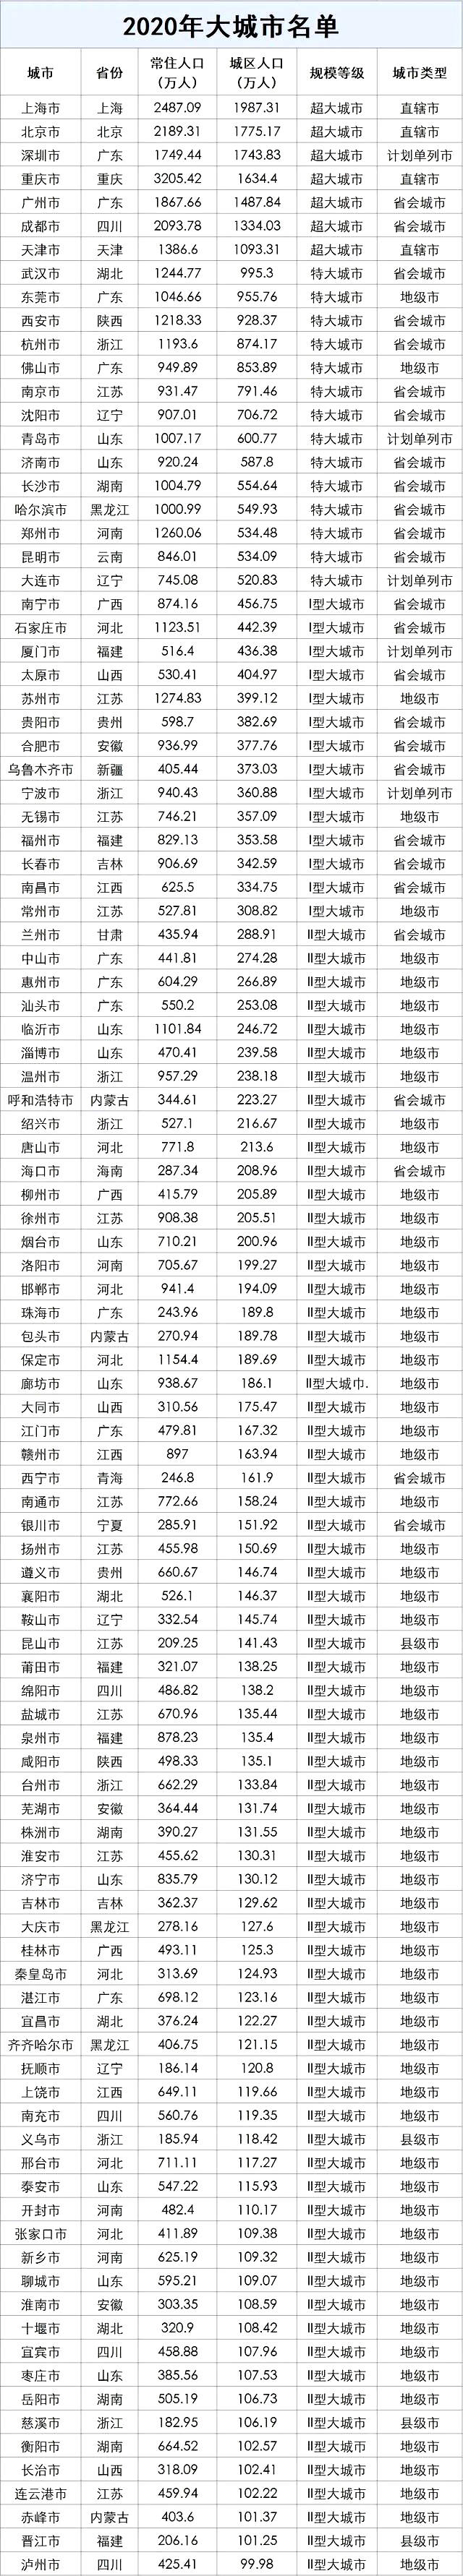 数据来源：《2020中国人口普查分县资料》